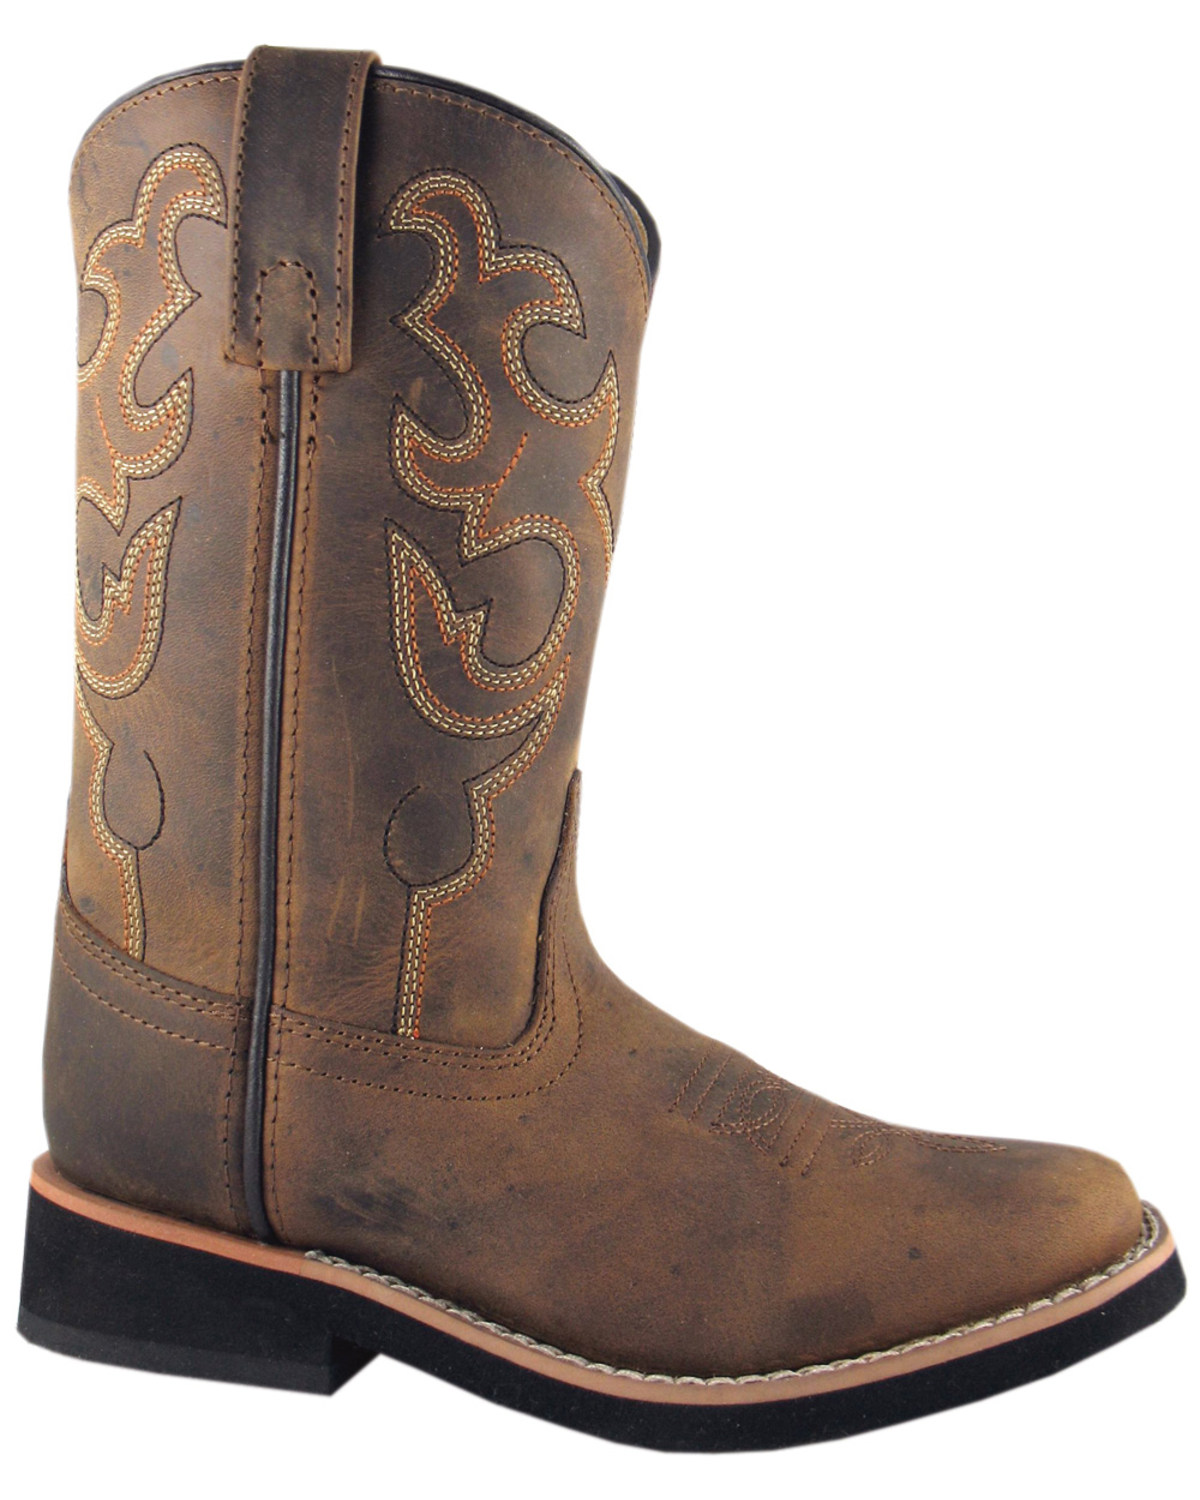 Smoky Mountain Kid's Pueblo Cowboy Boots